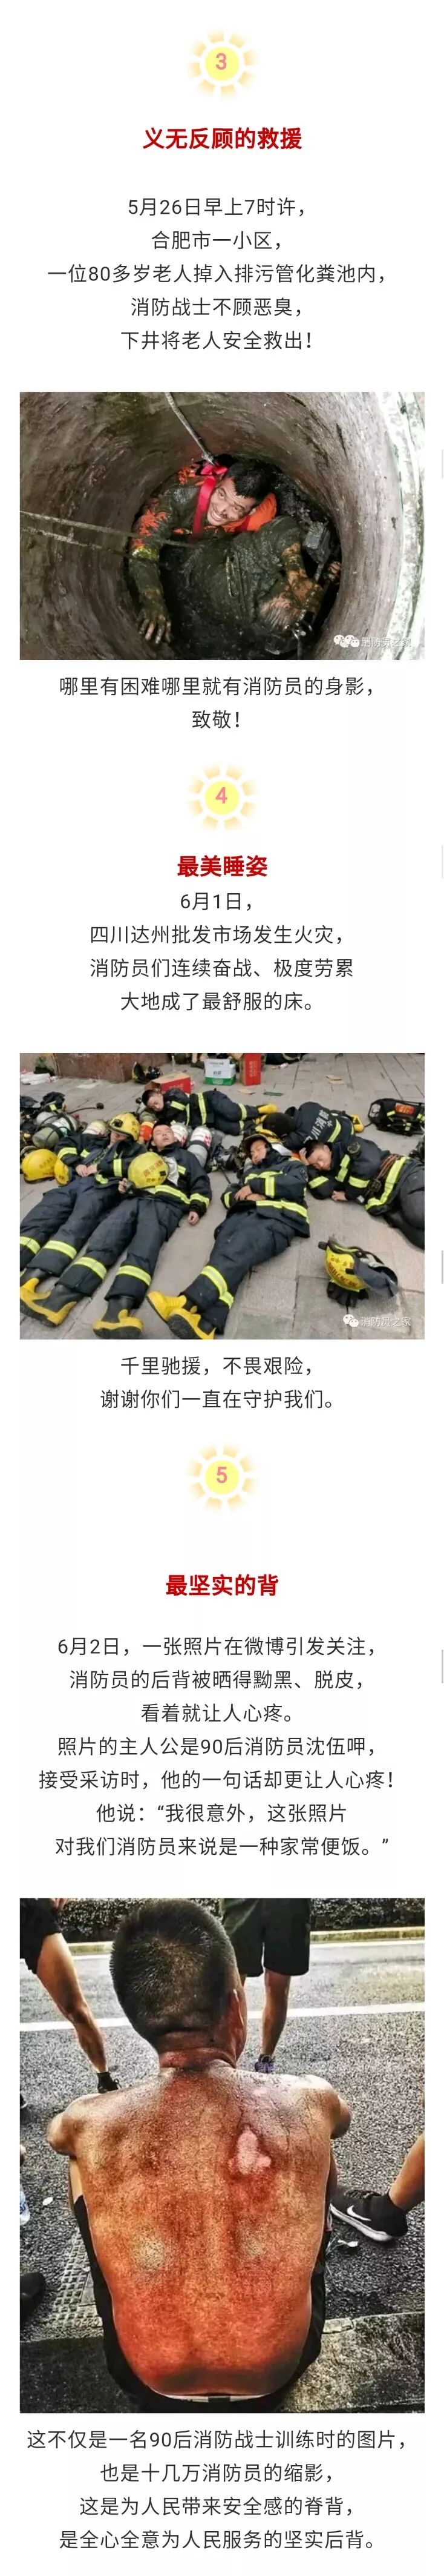 2018中国消防年度感动瞬间